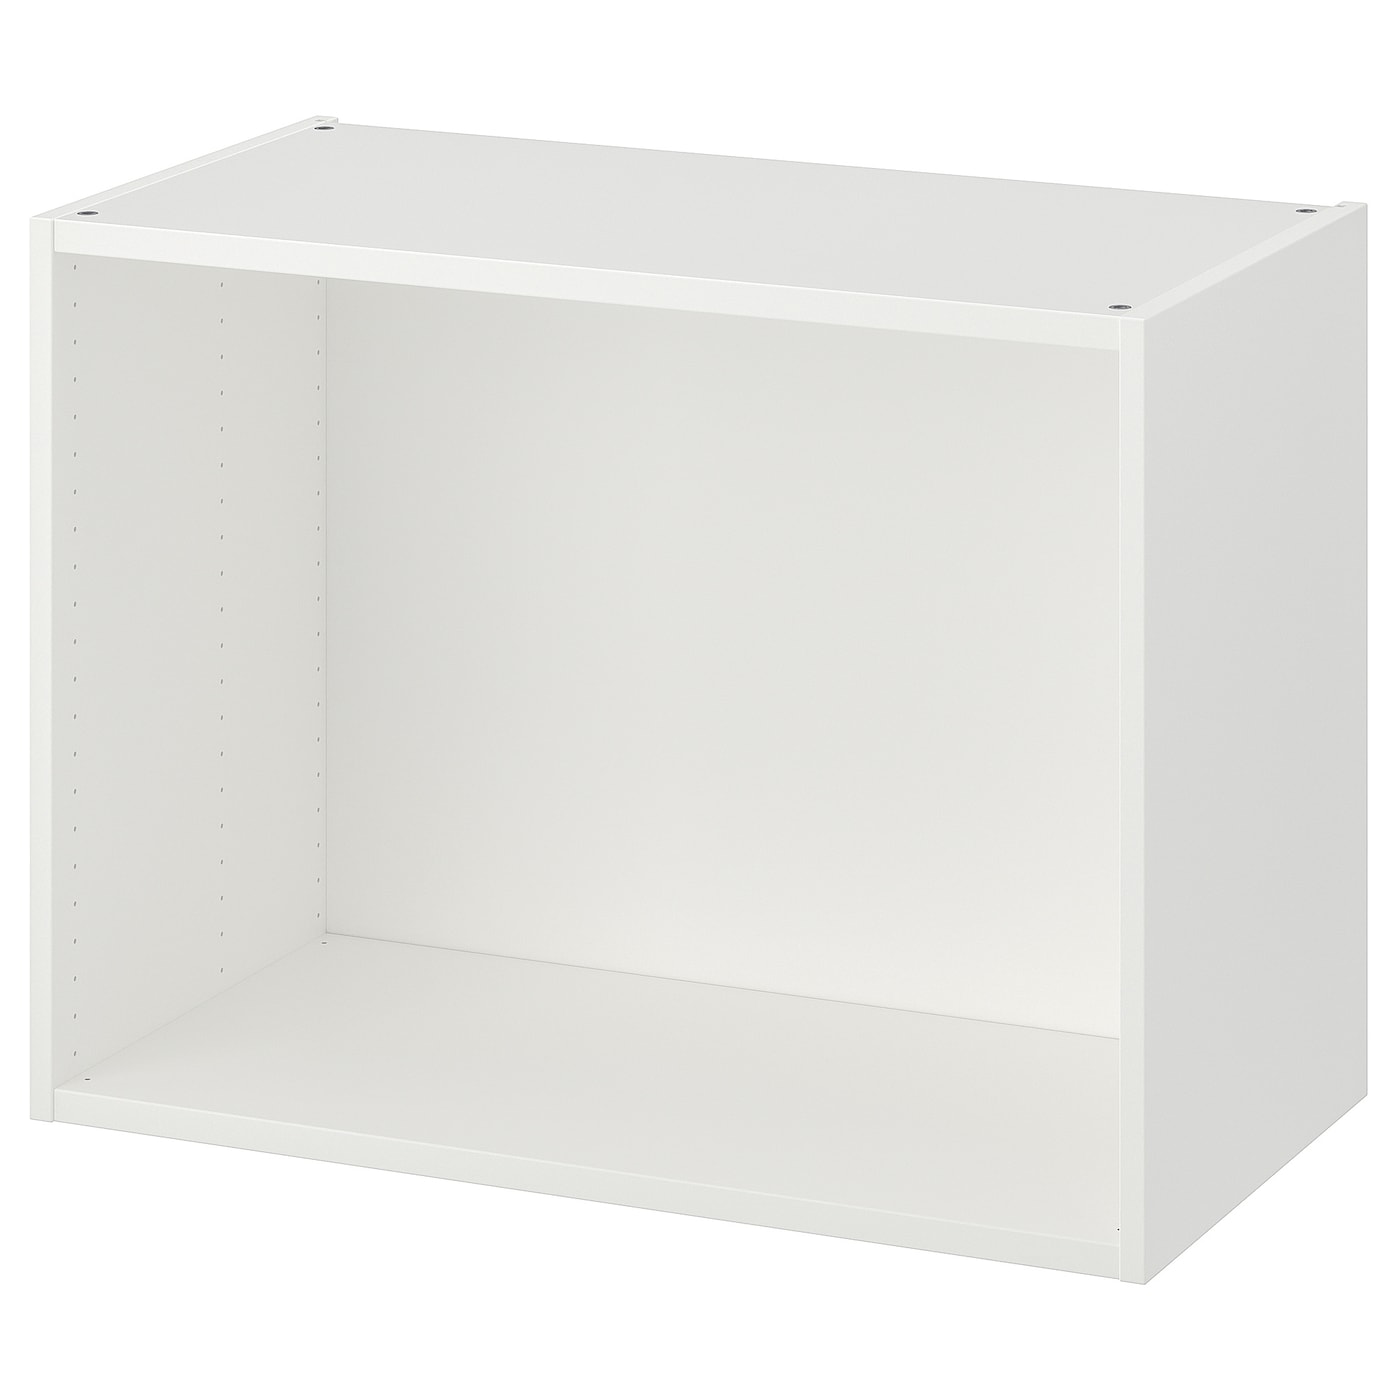 Каркас гардероба - PLATSA IKEA/ПЛАТСА ИКЕА, 60х40х80 см, белый